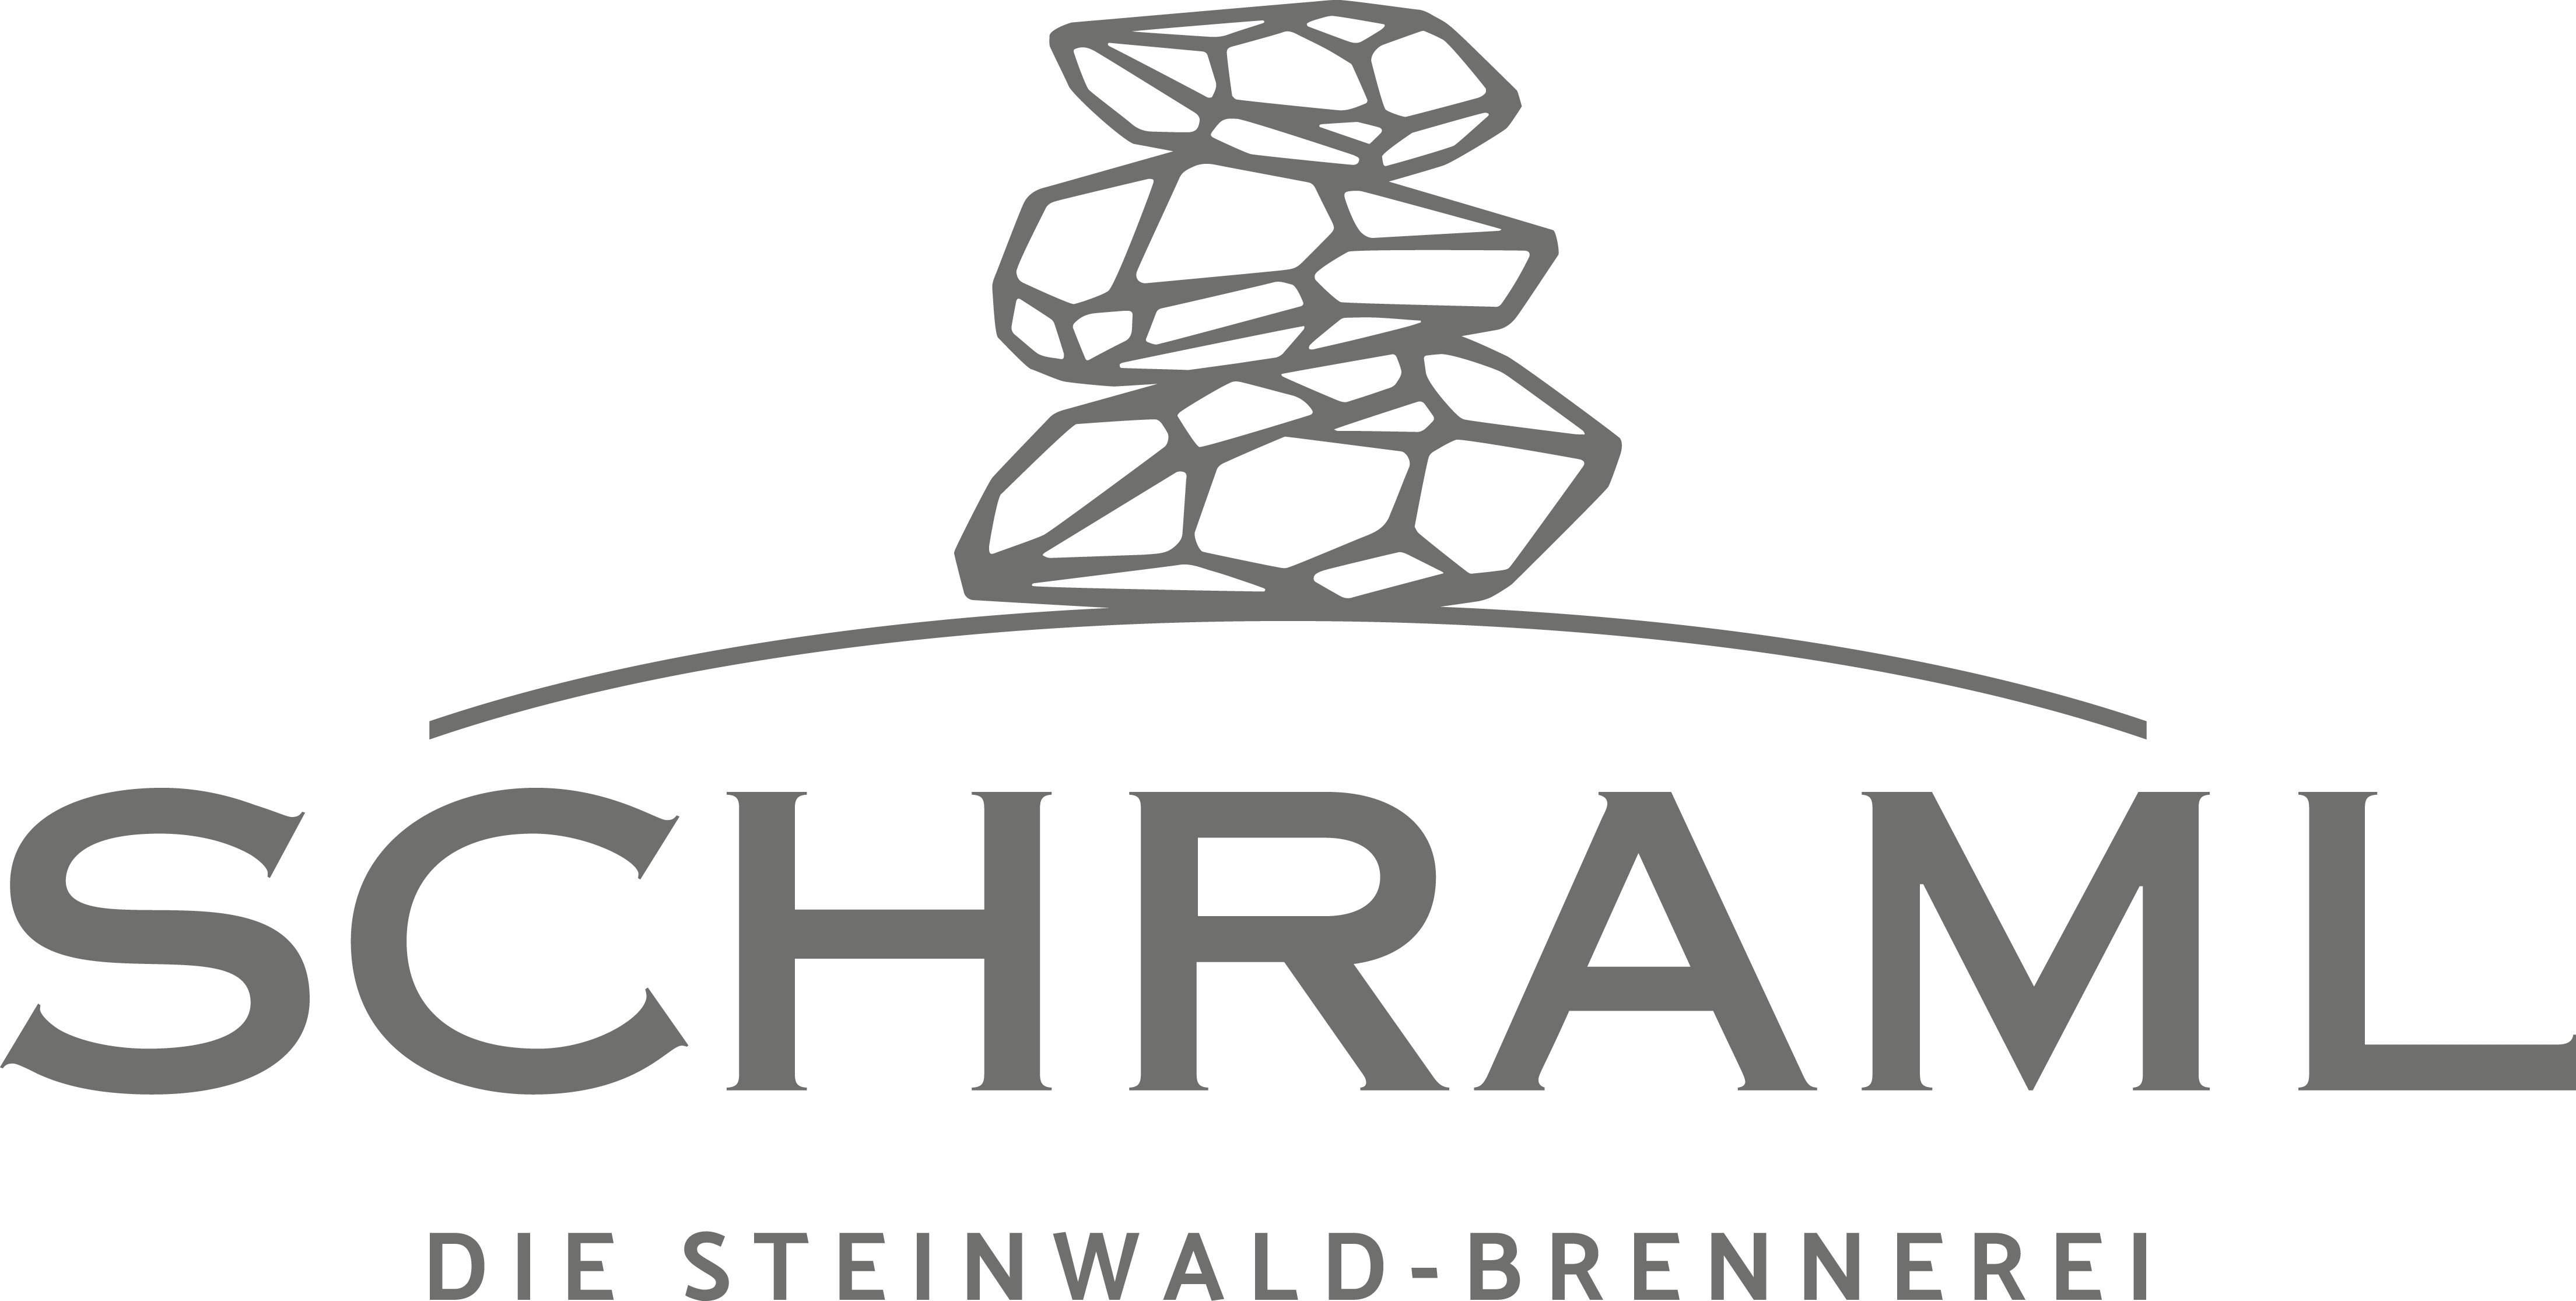 Schraml - Die Steinwald-Brennerei e.K. Logo